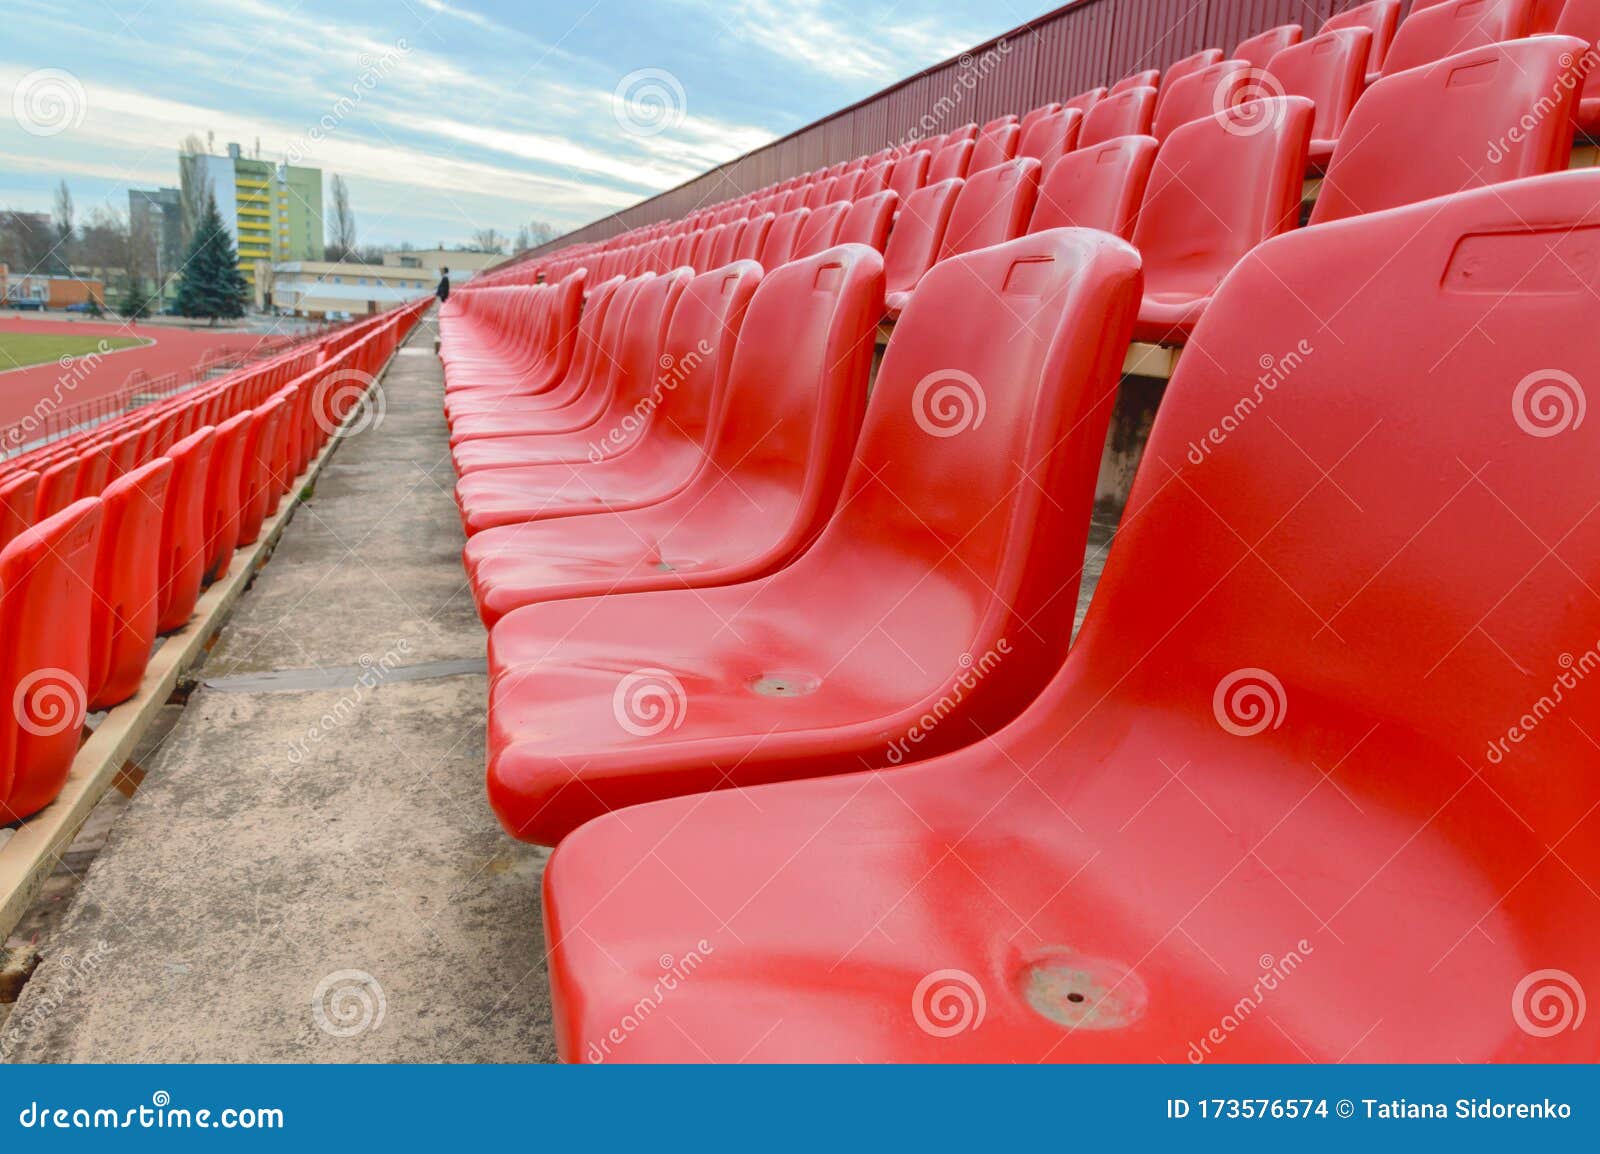 Spectator Bleachers on an Open Soccer Field. Stadium for Summer ...